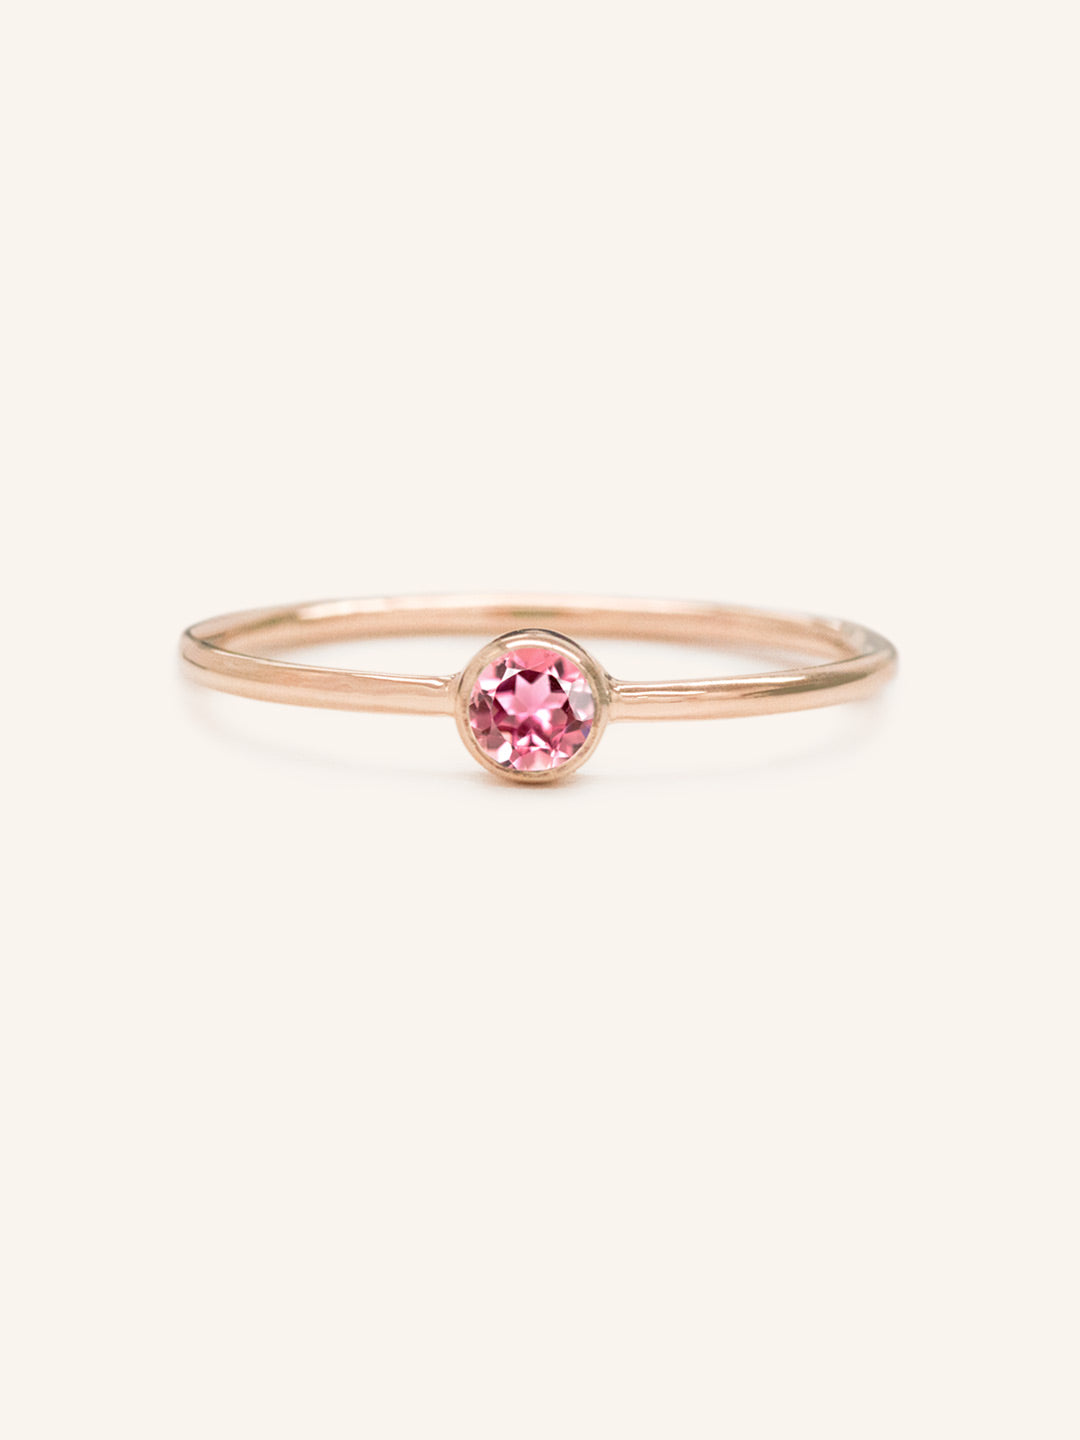 Autumn Lane Pink Tourmaline Ring